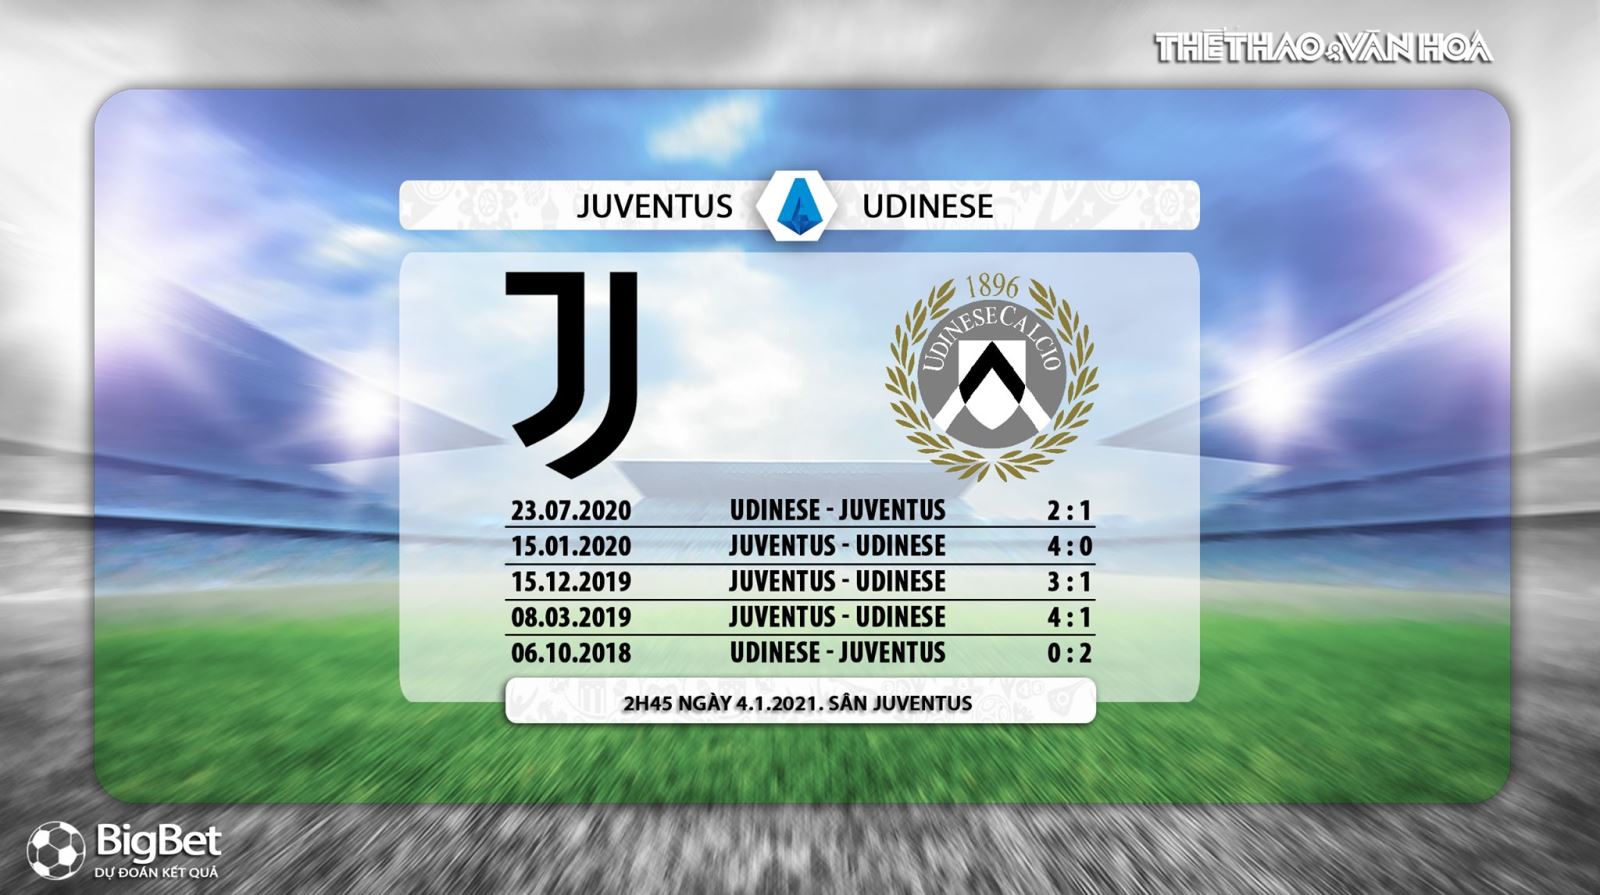 Keo nha cai, Nhận định kết quả, Juventus vs Udinese, Trực tiếp bóng đá Italia vòng 15, PFT Play, Trực tiếp Juventus vs Udinese, Kèo bóng đá Juventus vs Udinese